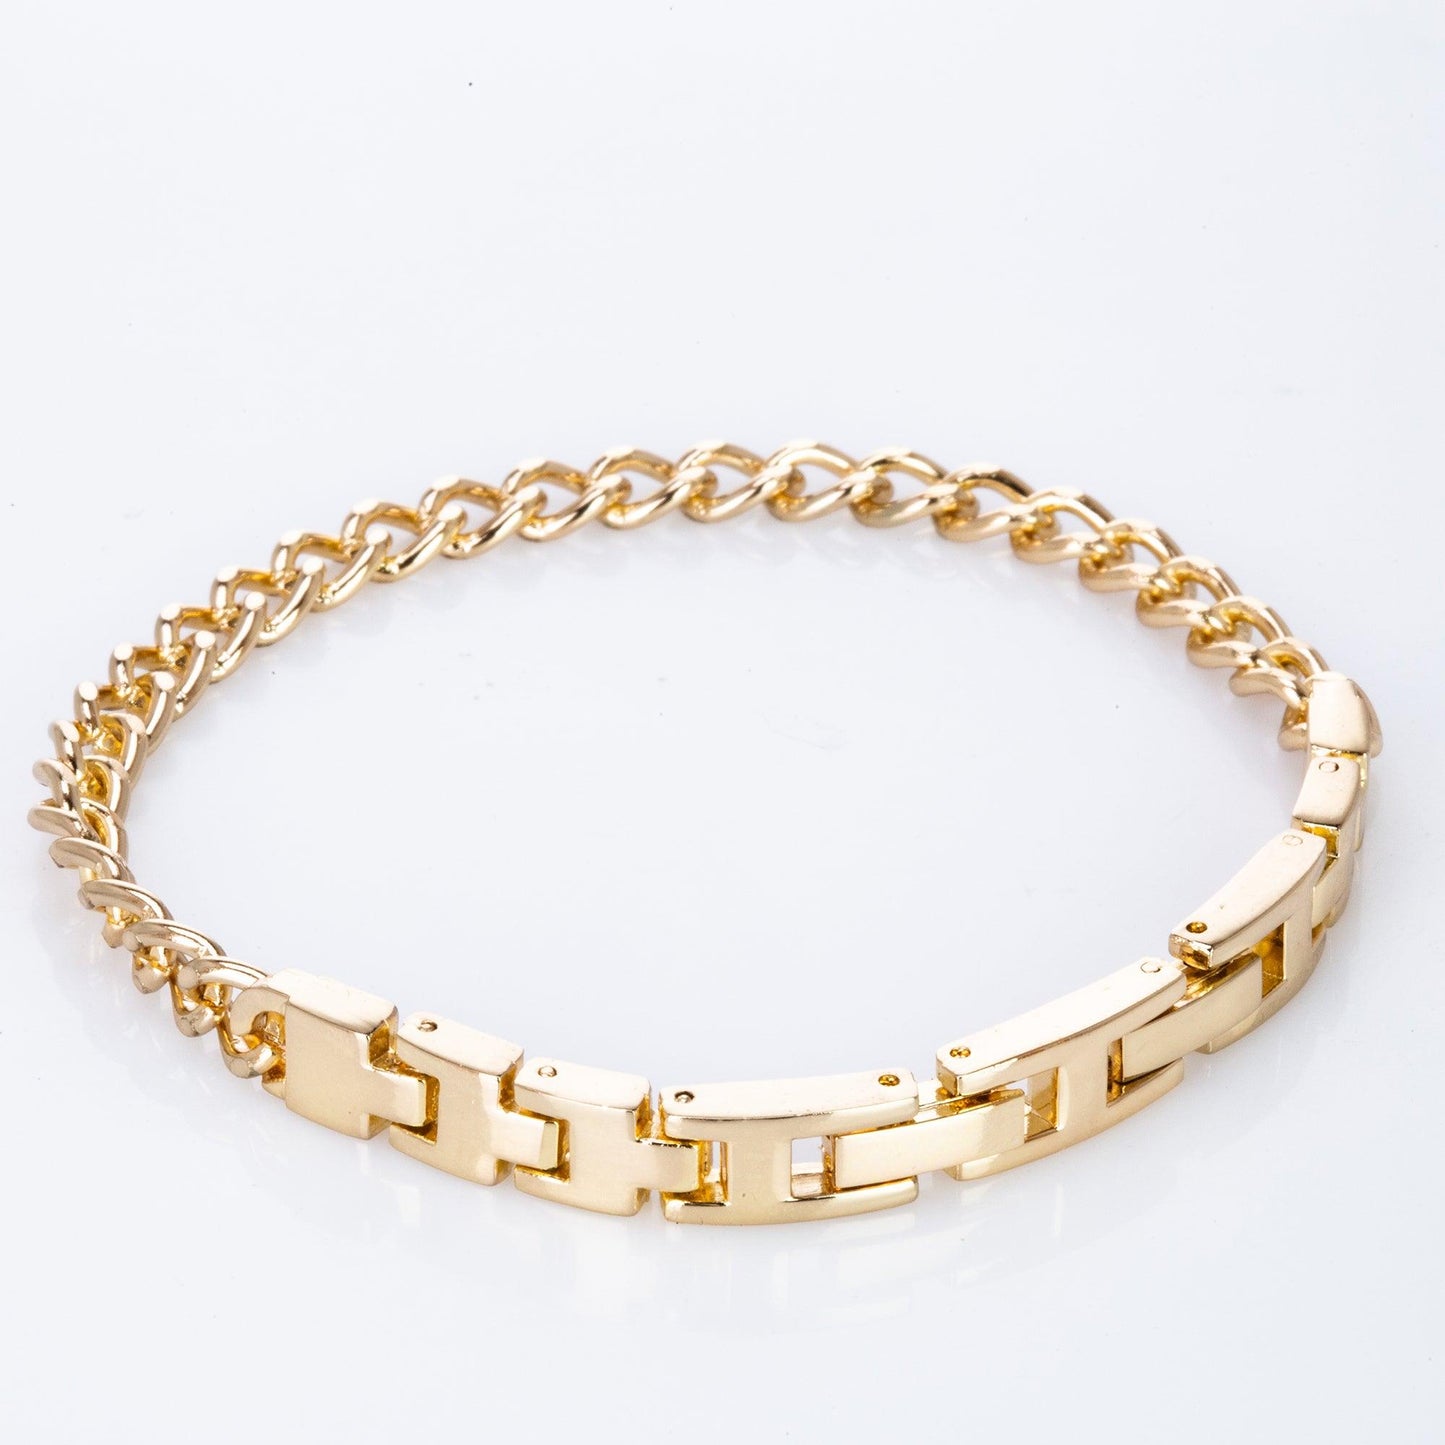 Excellanc gift set, ladies, watch, bracelet, bangle, gold-colored - Ékszer Akció